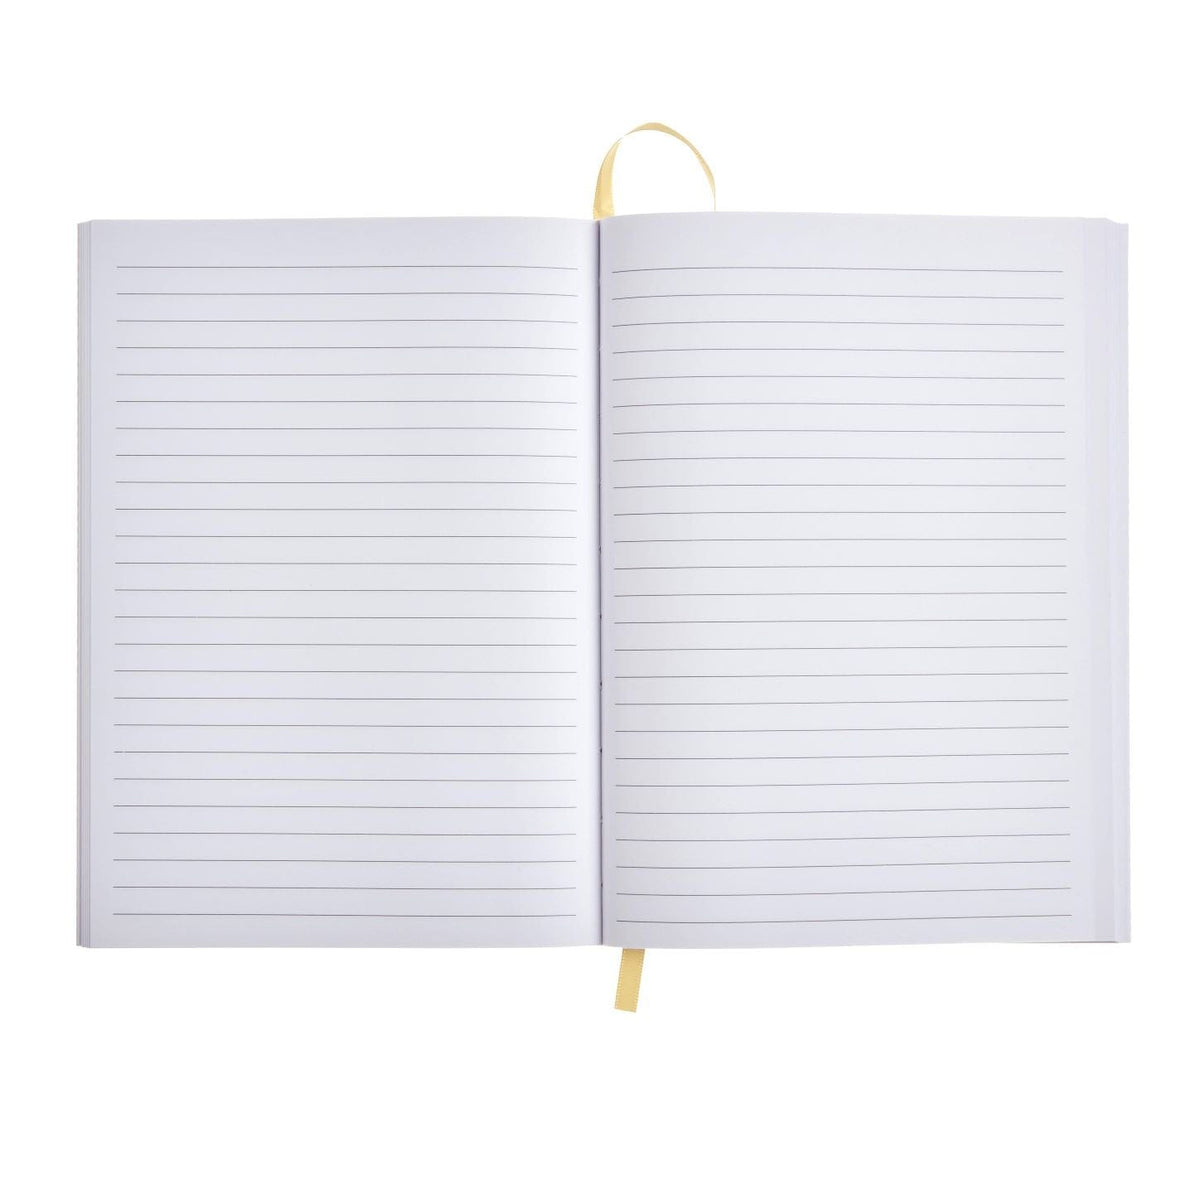 Navy Lemon Journal Roobee Notebooks 92726